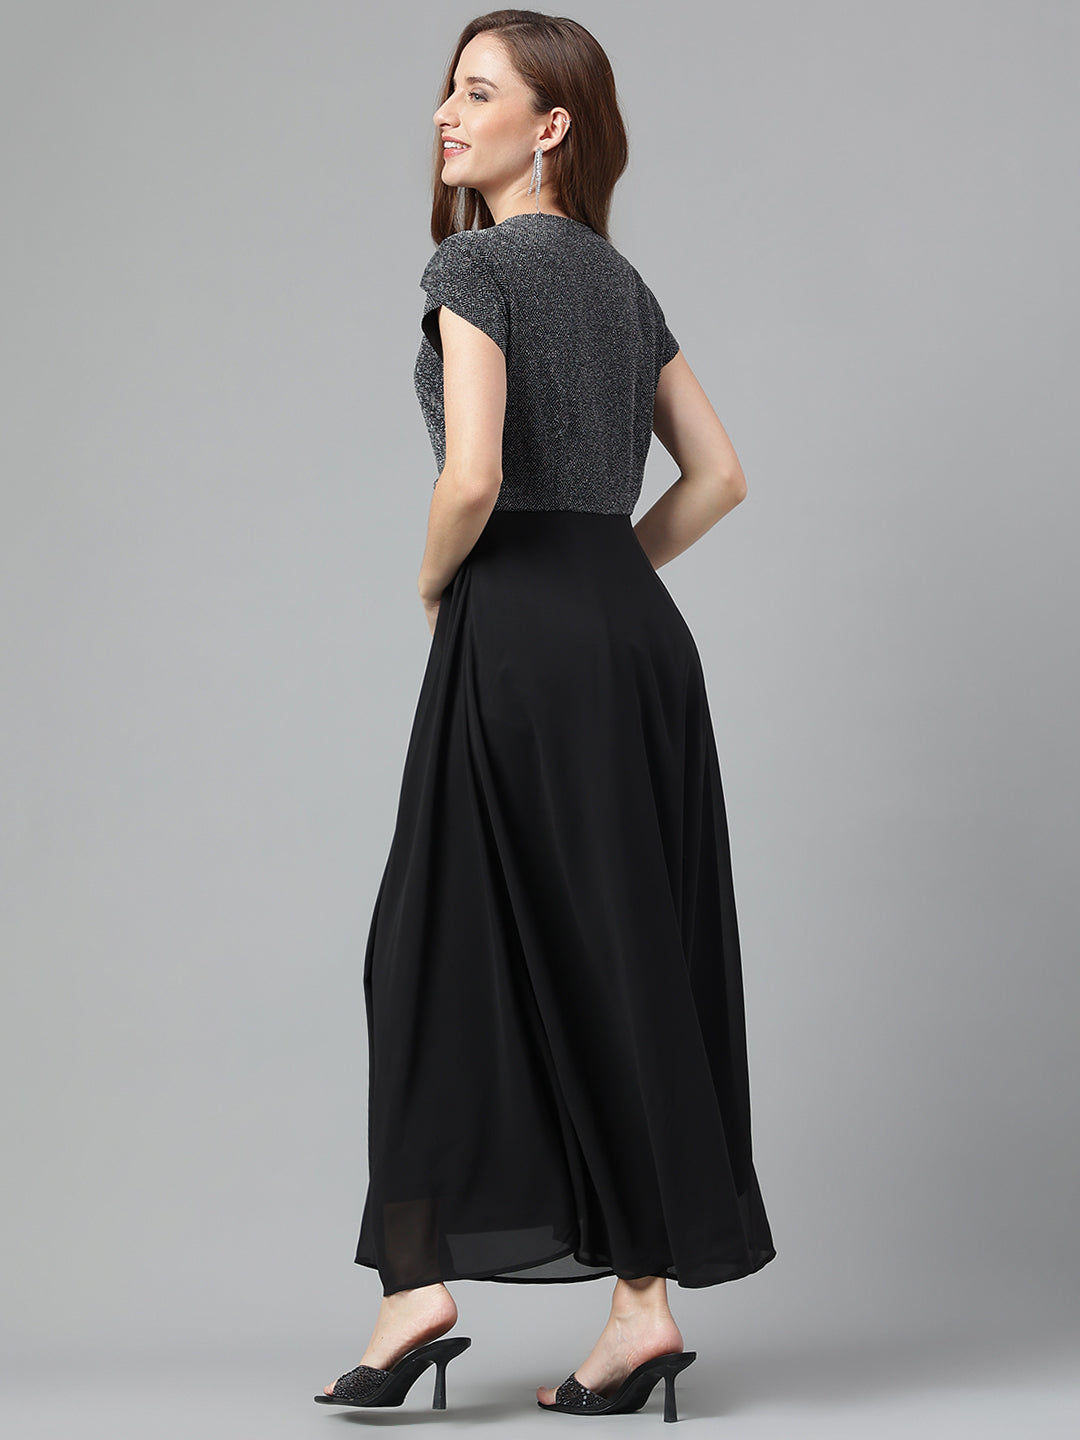 Black Cap Sleeves Solid Maxi Dress